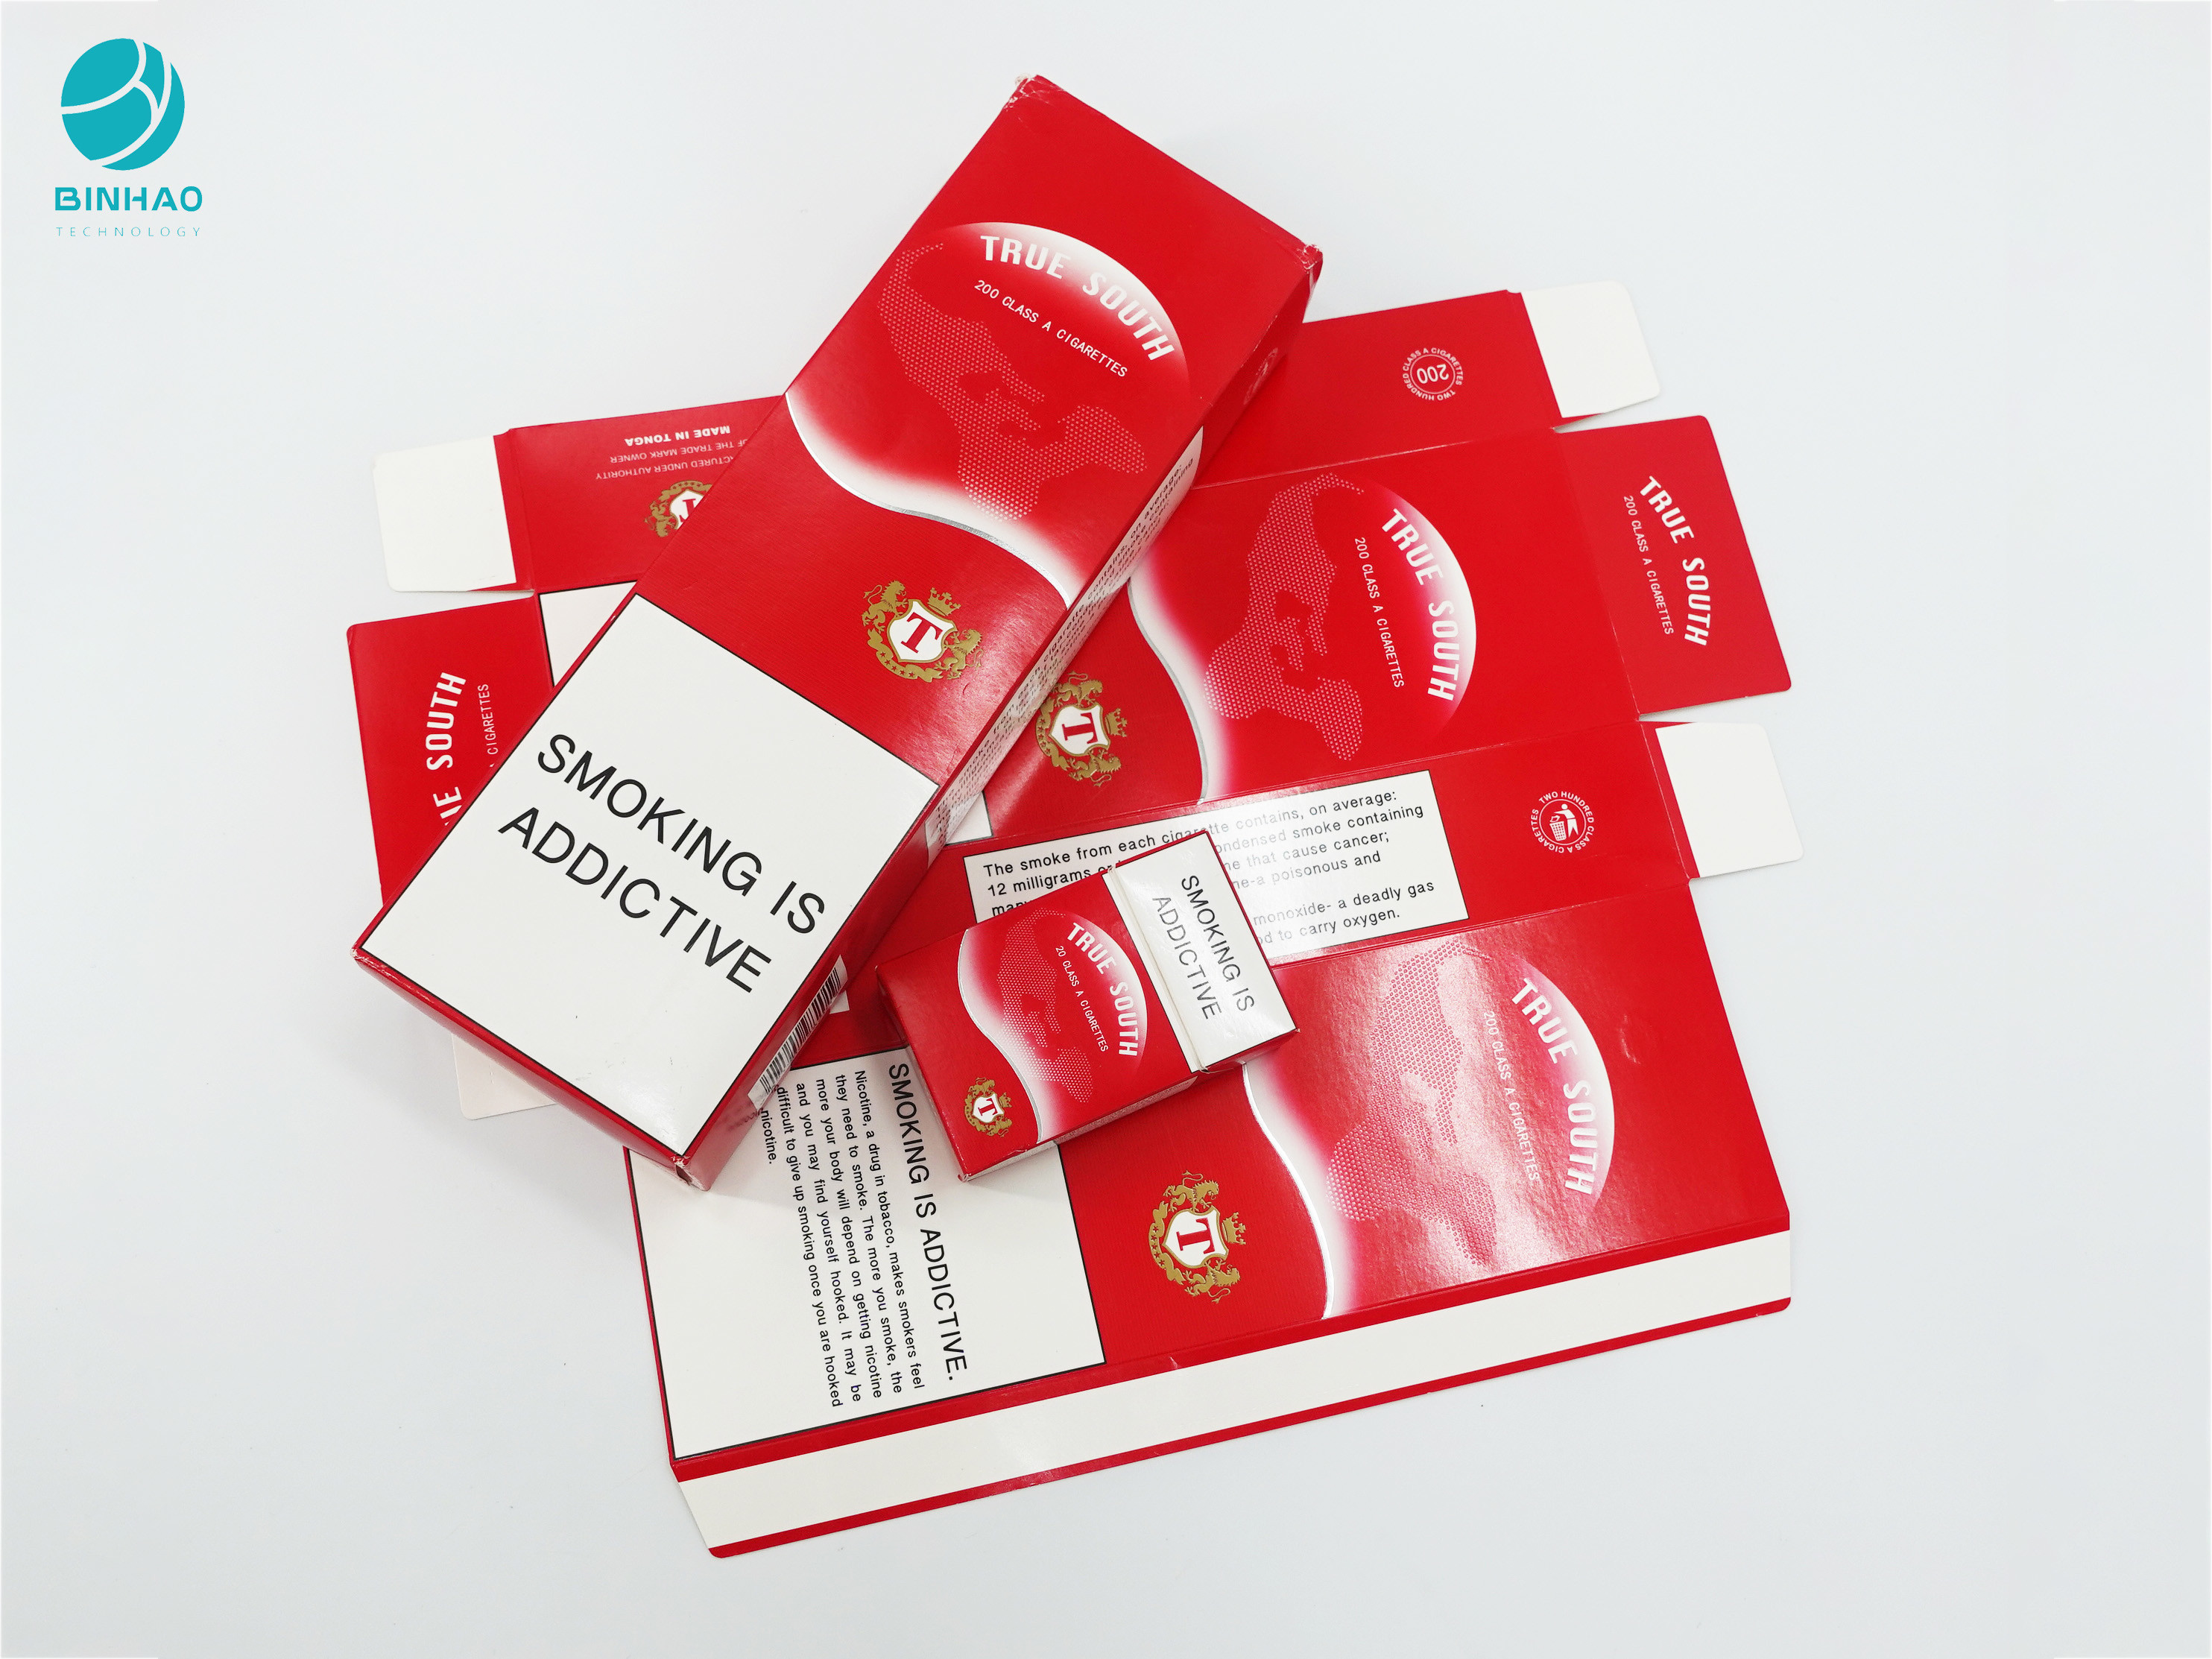 کارتن رنگارنگ سازگار با محیط زیست برای بسته بندی سیگار تنباکو